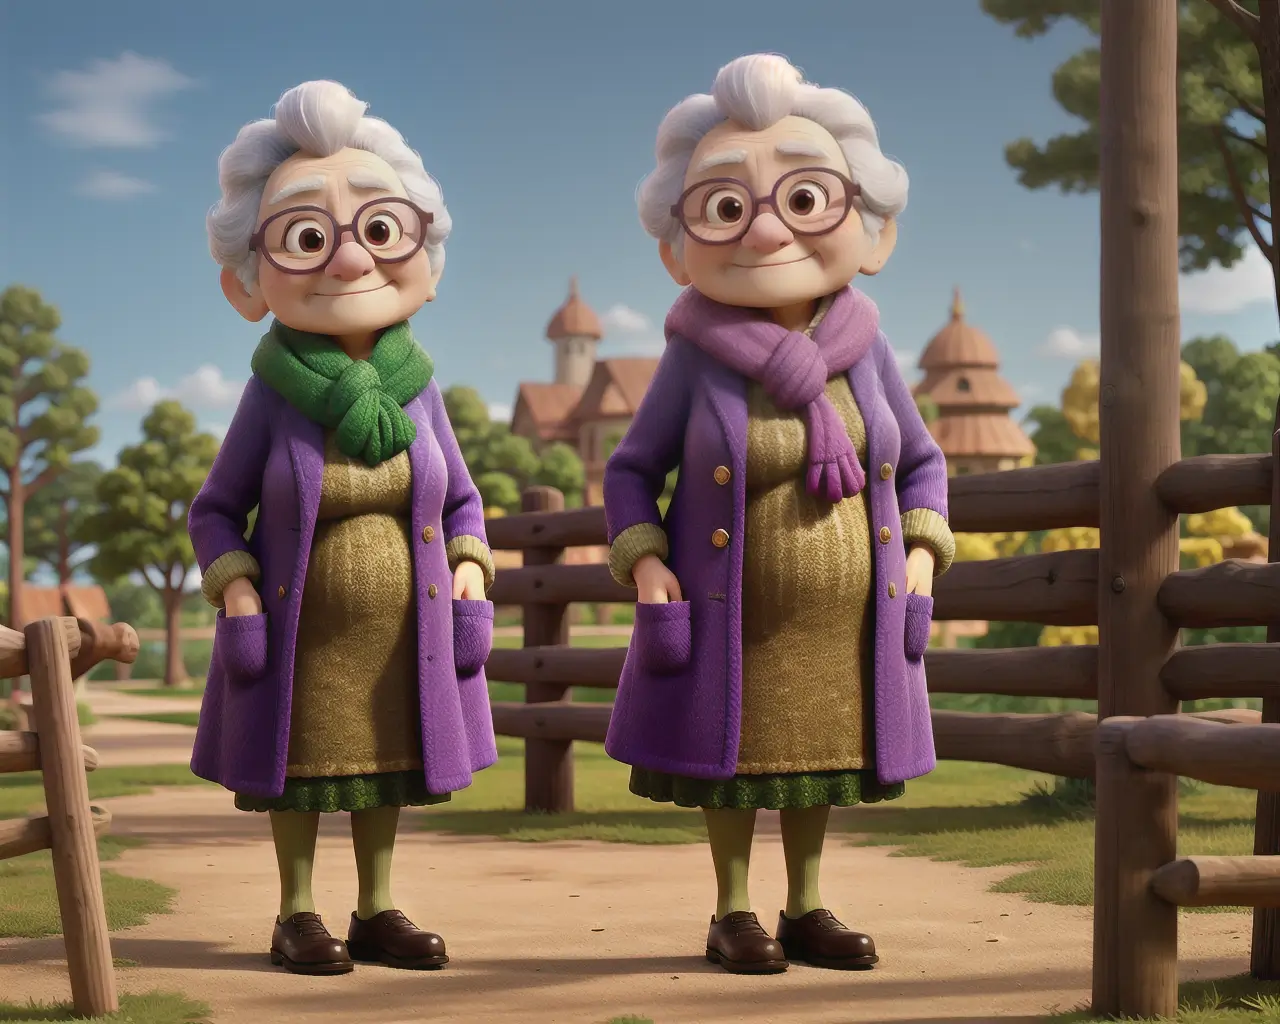 Elderly women cartoon characters outdoors